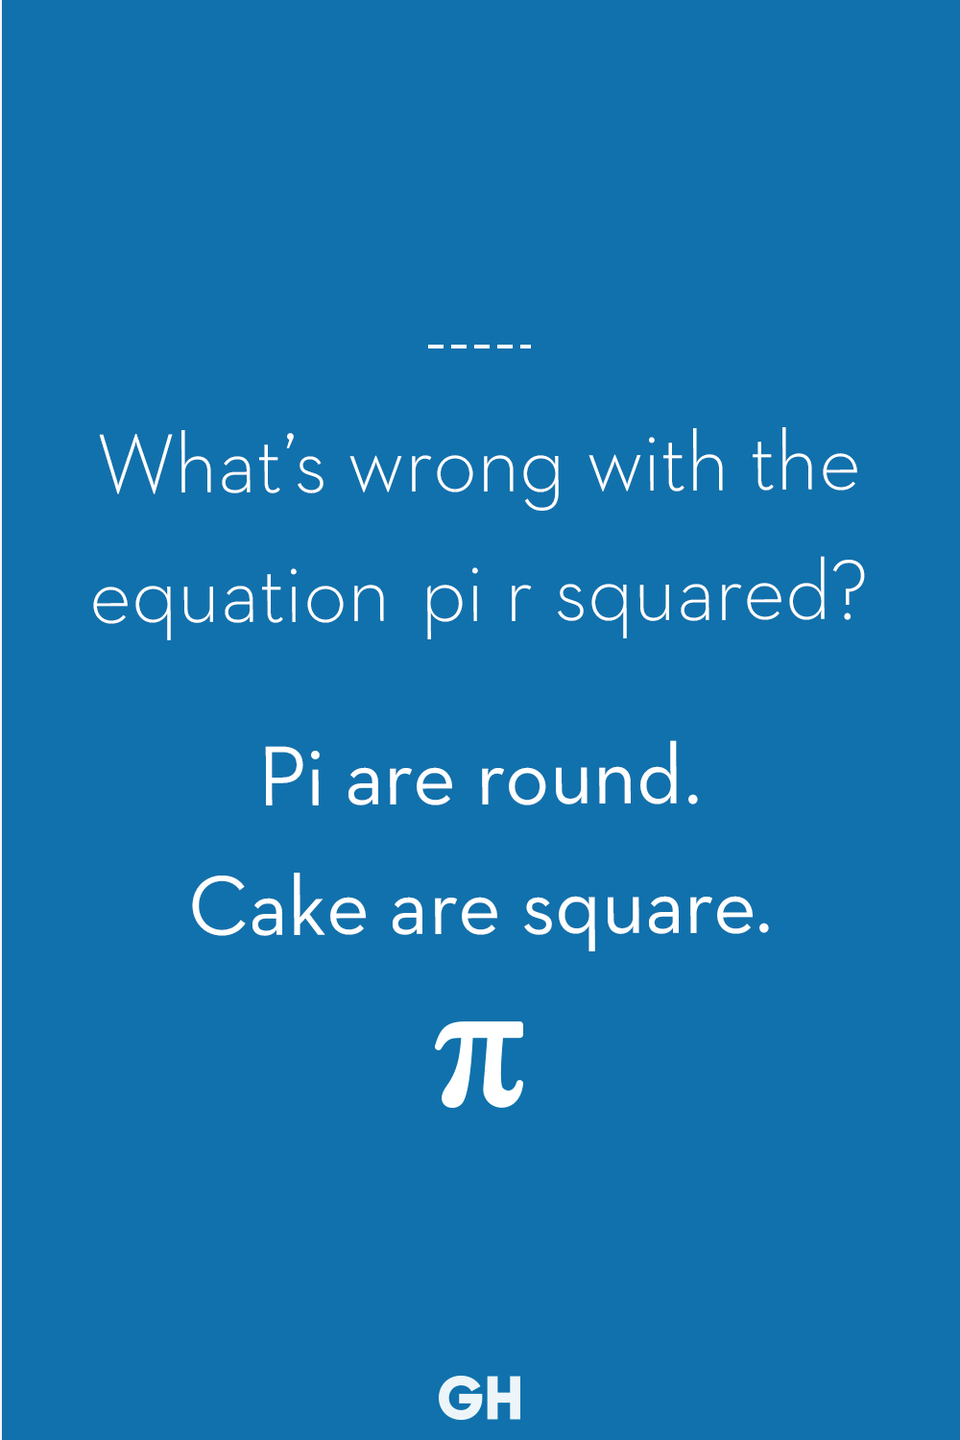 <p>Pi are round. Cake are square.</p>